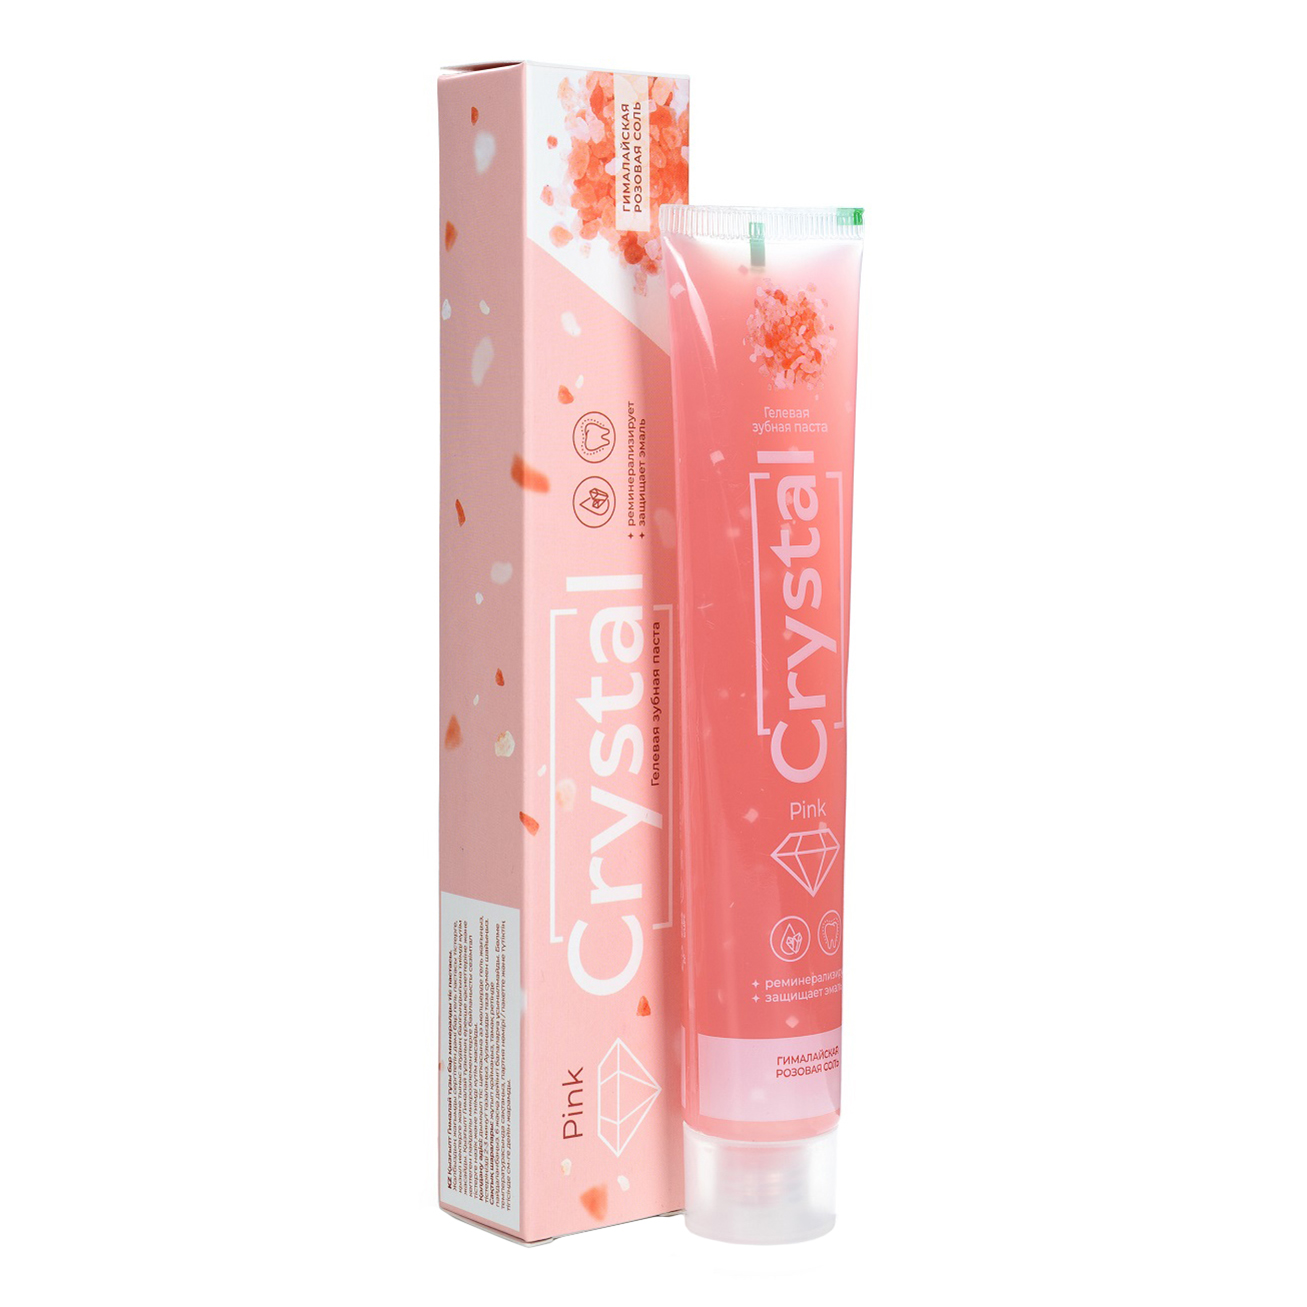 Зубная паста Dorall Collection Toothpaste Pink Crystal Реминерализующая, 100 мл